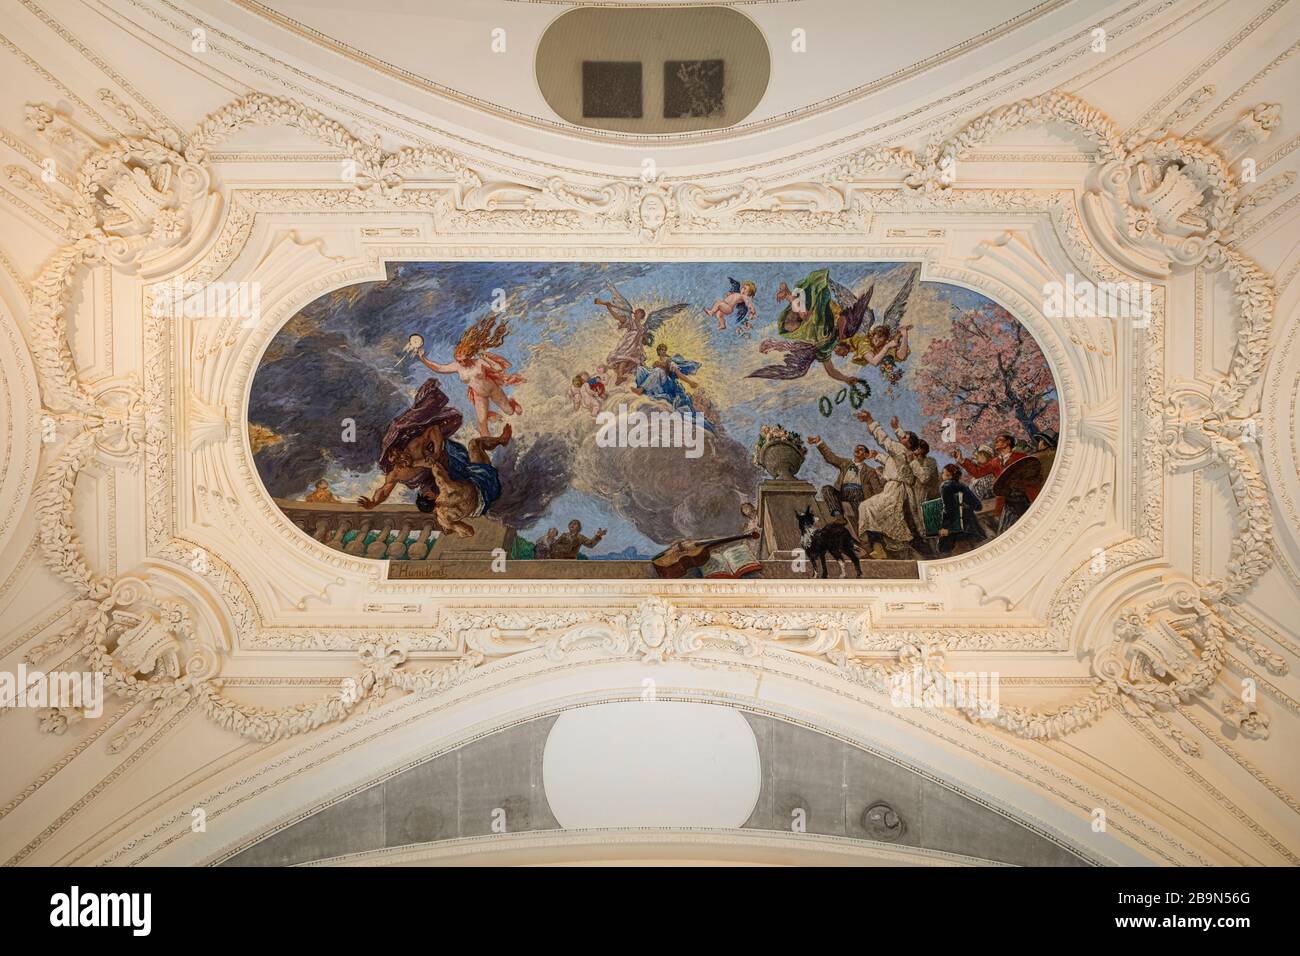 Ornate ceiling details in the Petit Palais, Paris, France Stock Photo